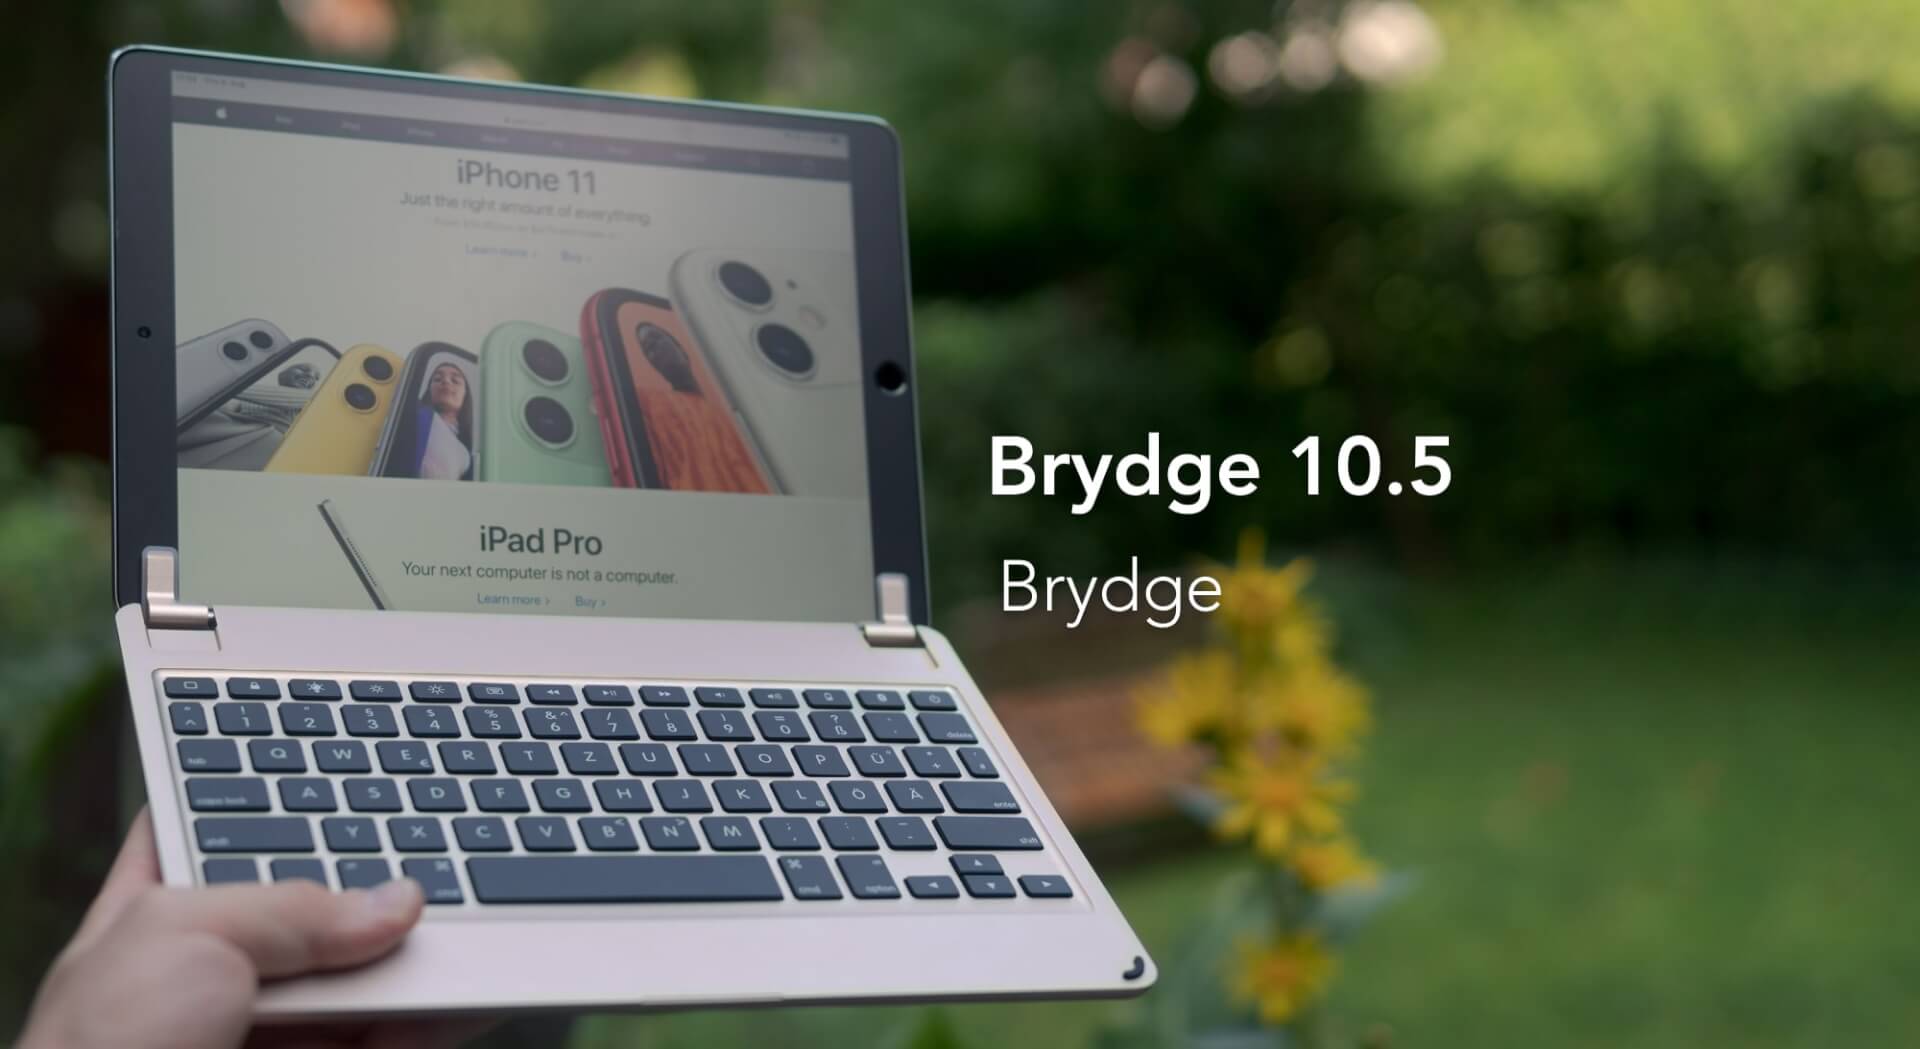 brydge 10.5 keyboard mit iPad Pro